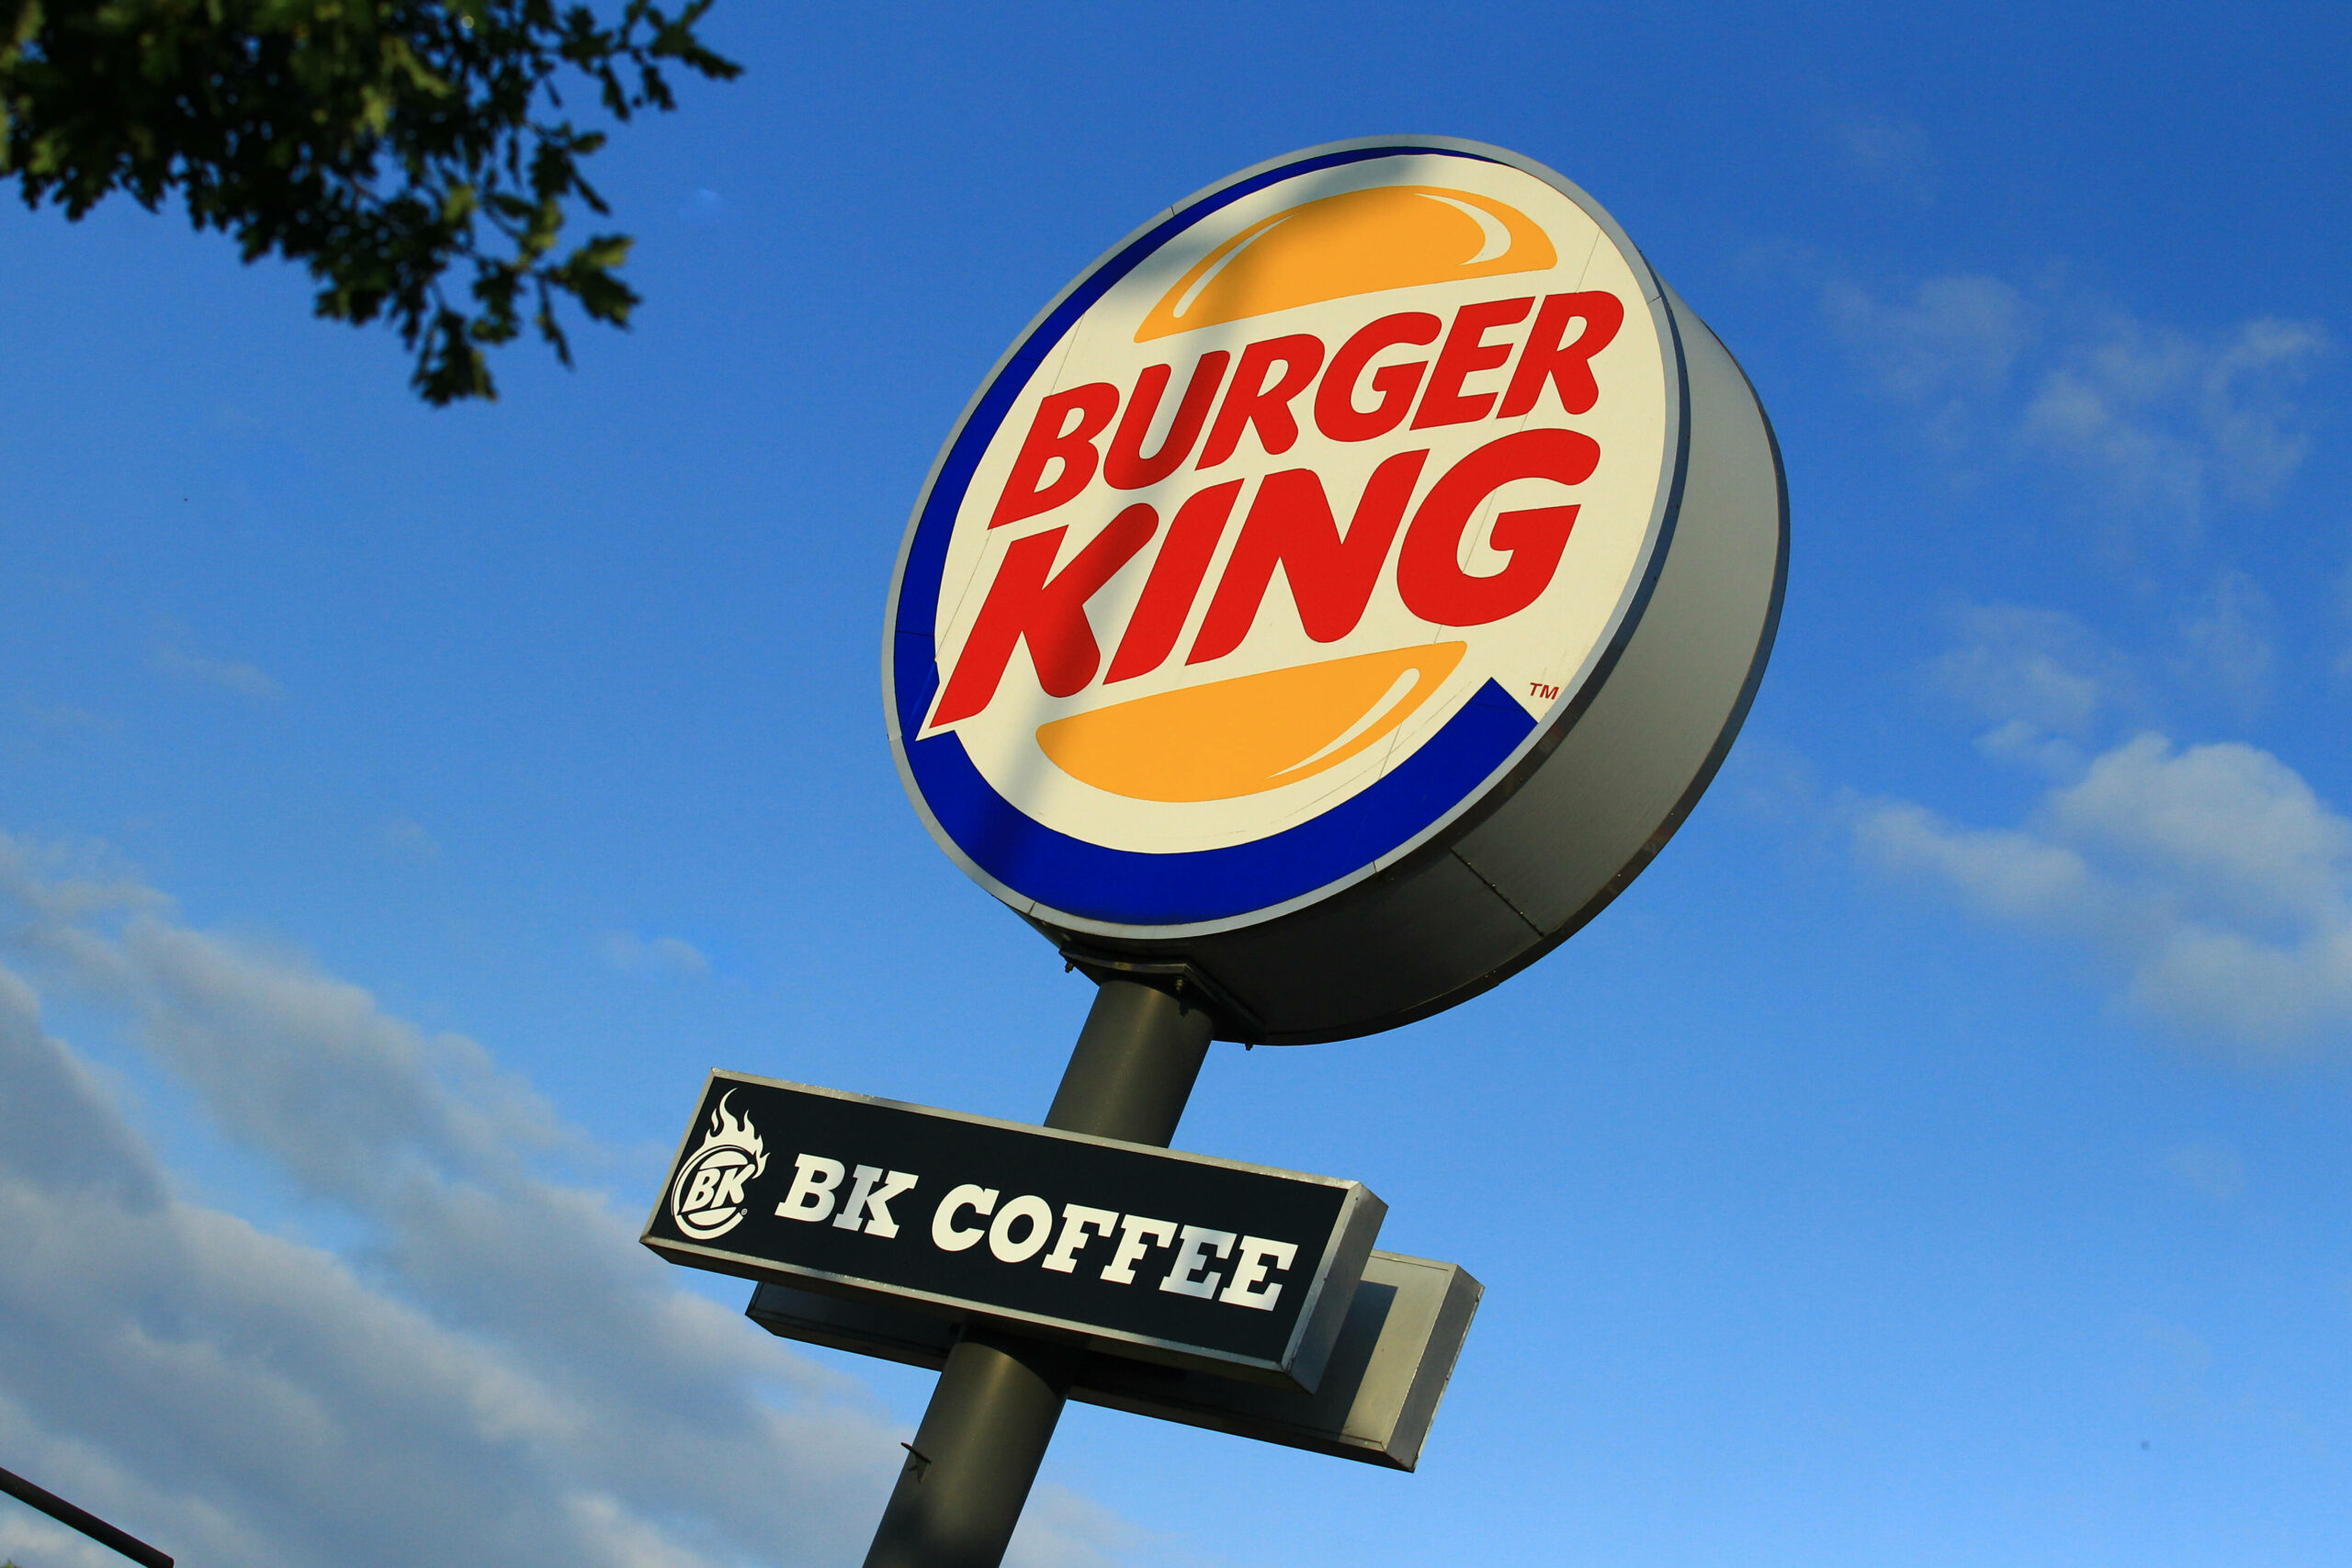 Bei Burger King in Hamburg-Langenhorn wurden zwei Menschen mit einem Messer verletzt (Symbolbild).